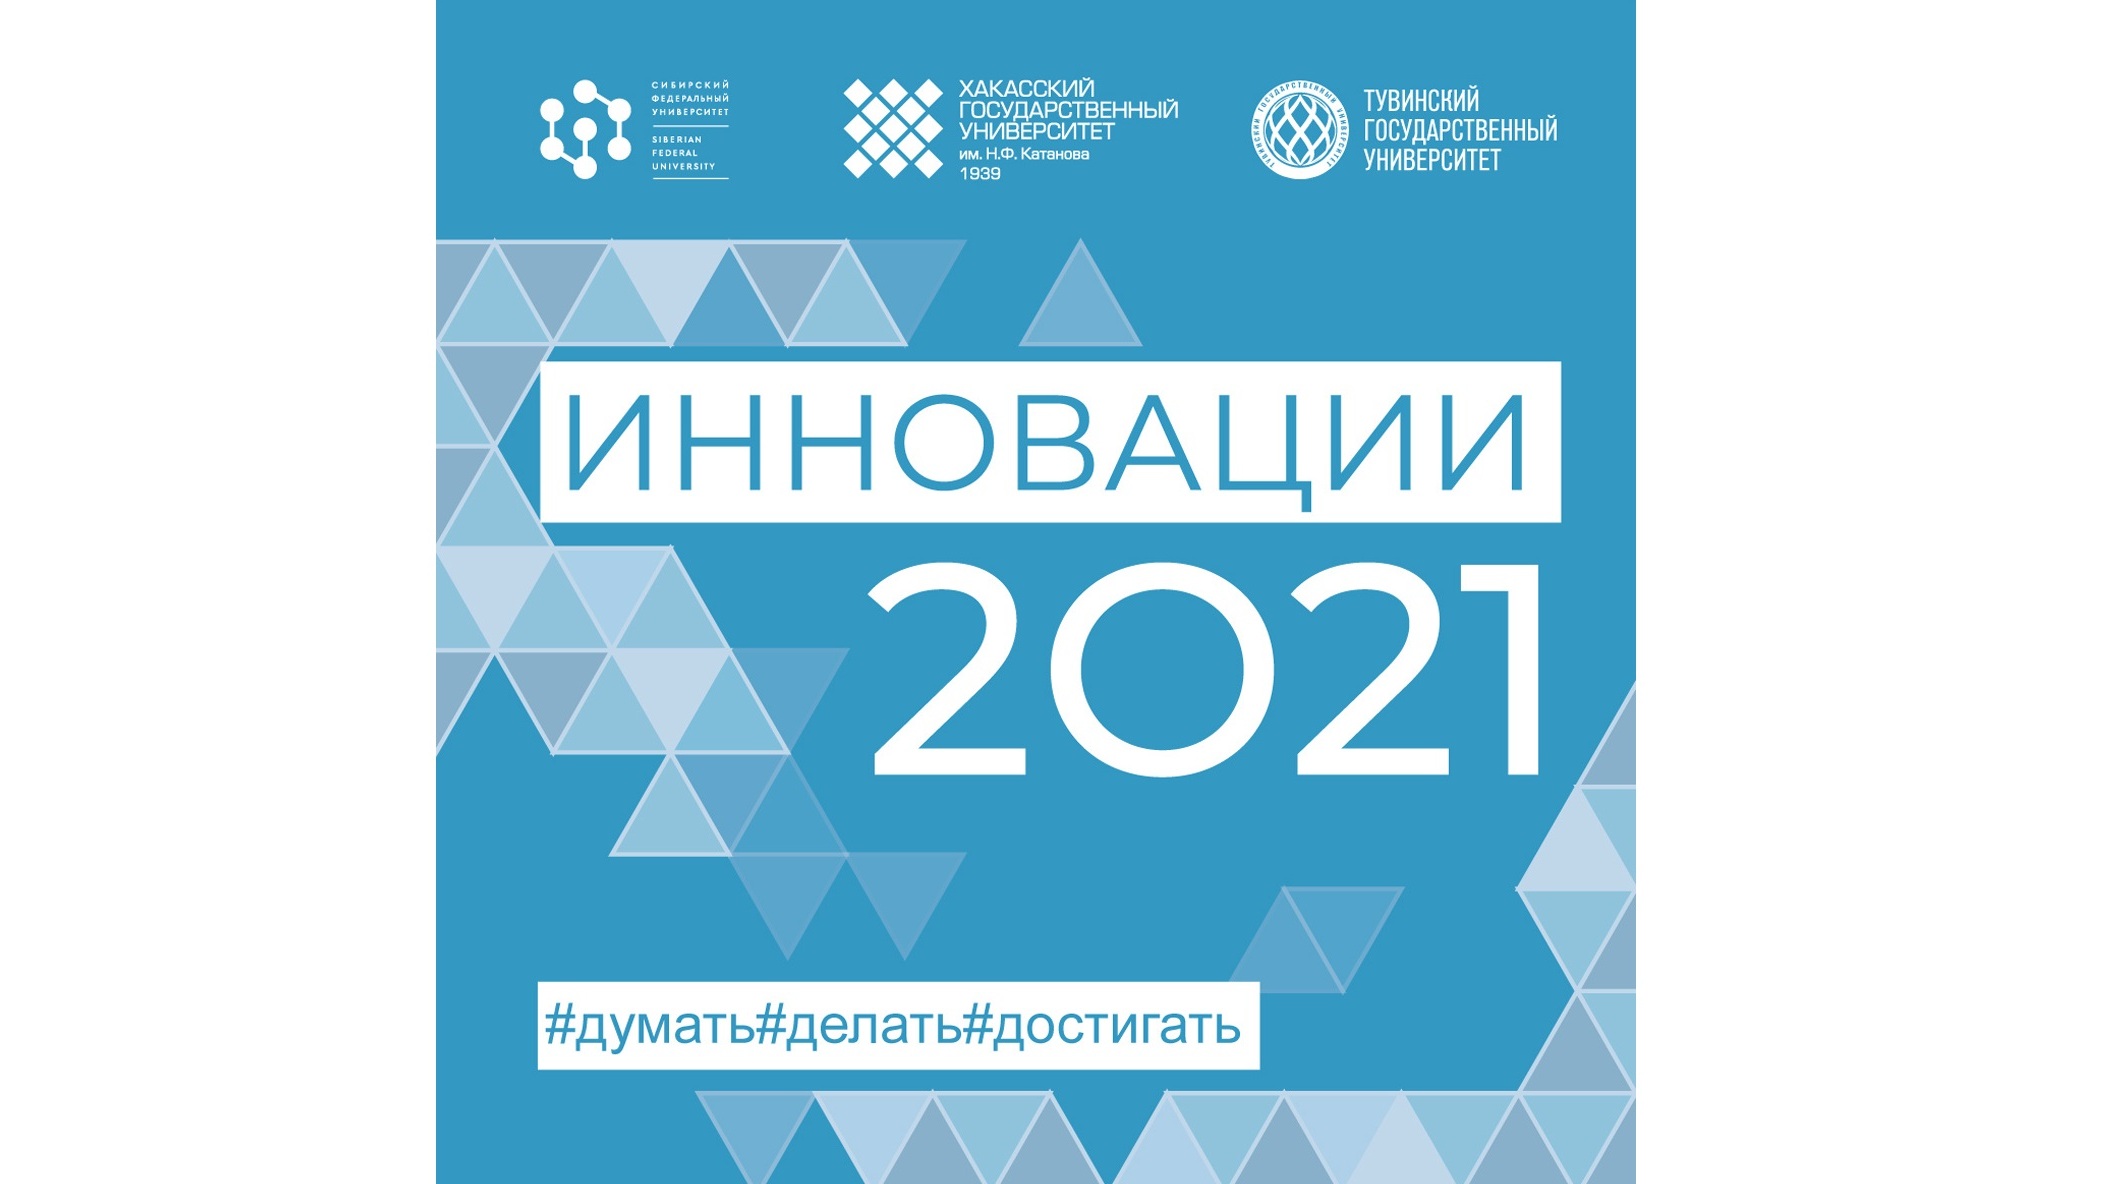 Инновации 2021. I межрегиональный инновационный молодежный форум "инновации ". Школа инноваций 2021